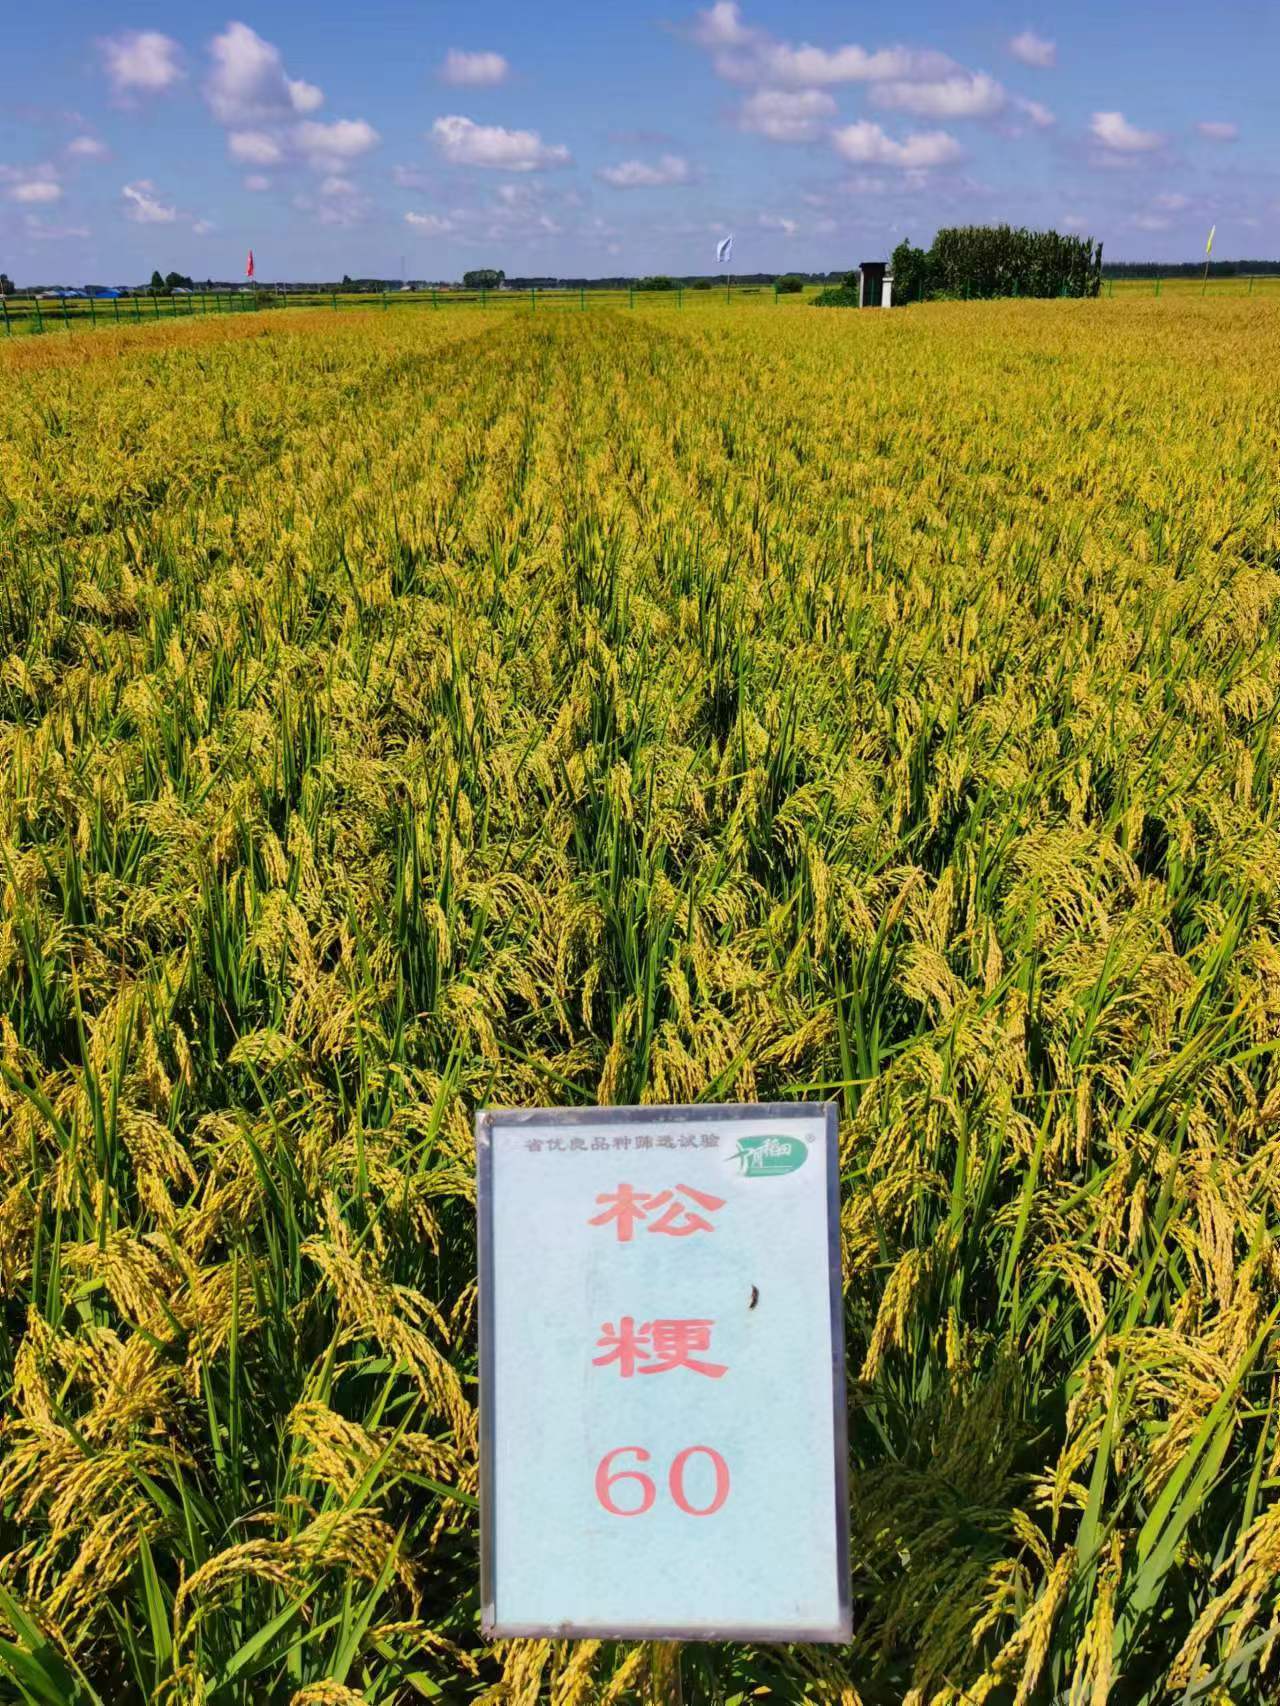 松粳201水稻品种简介图片